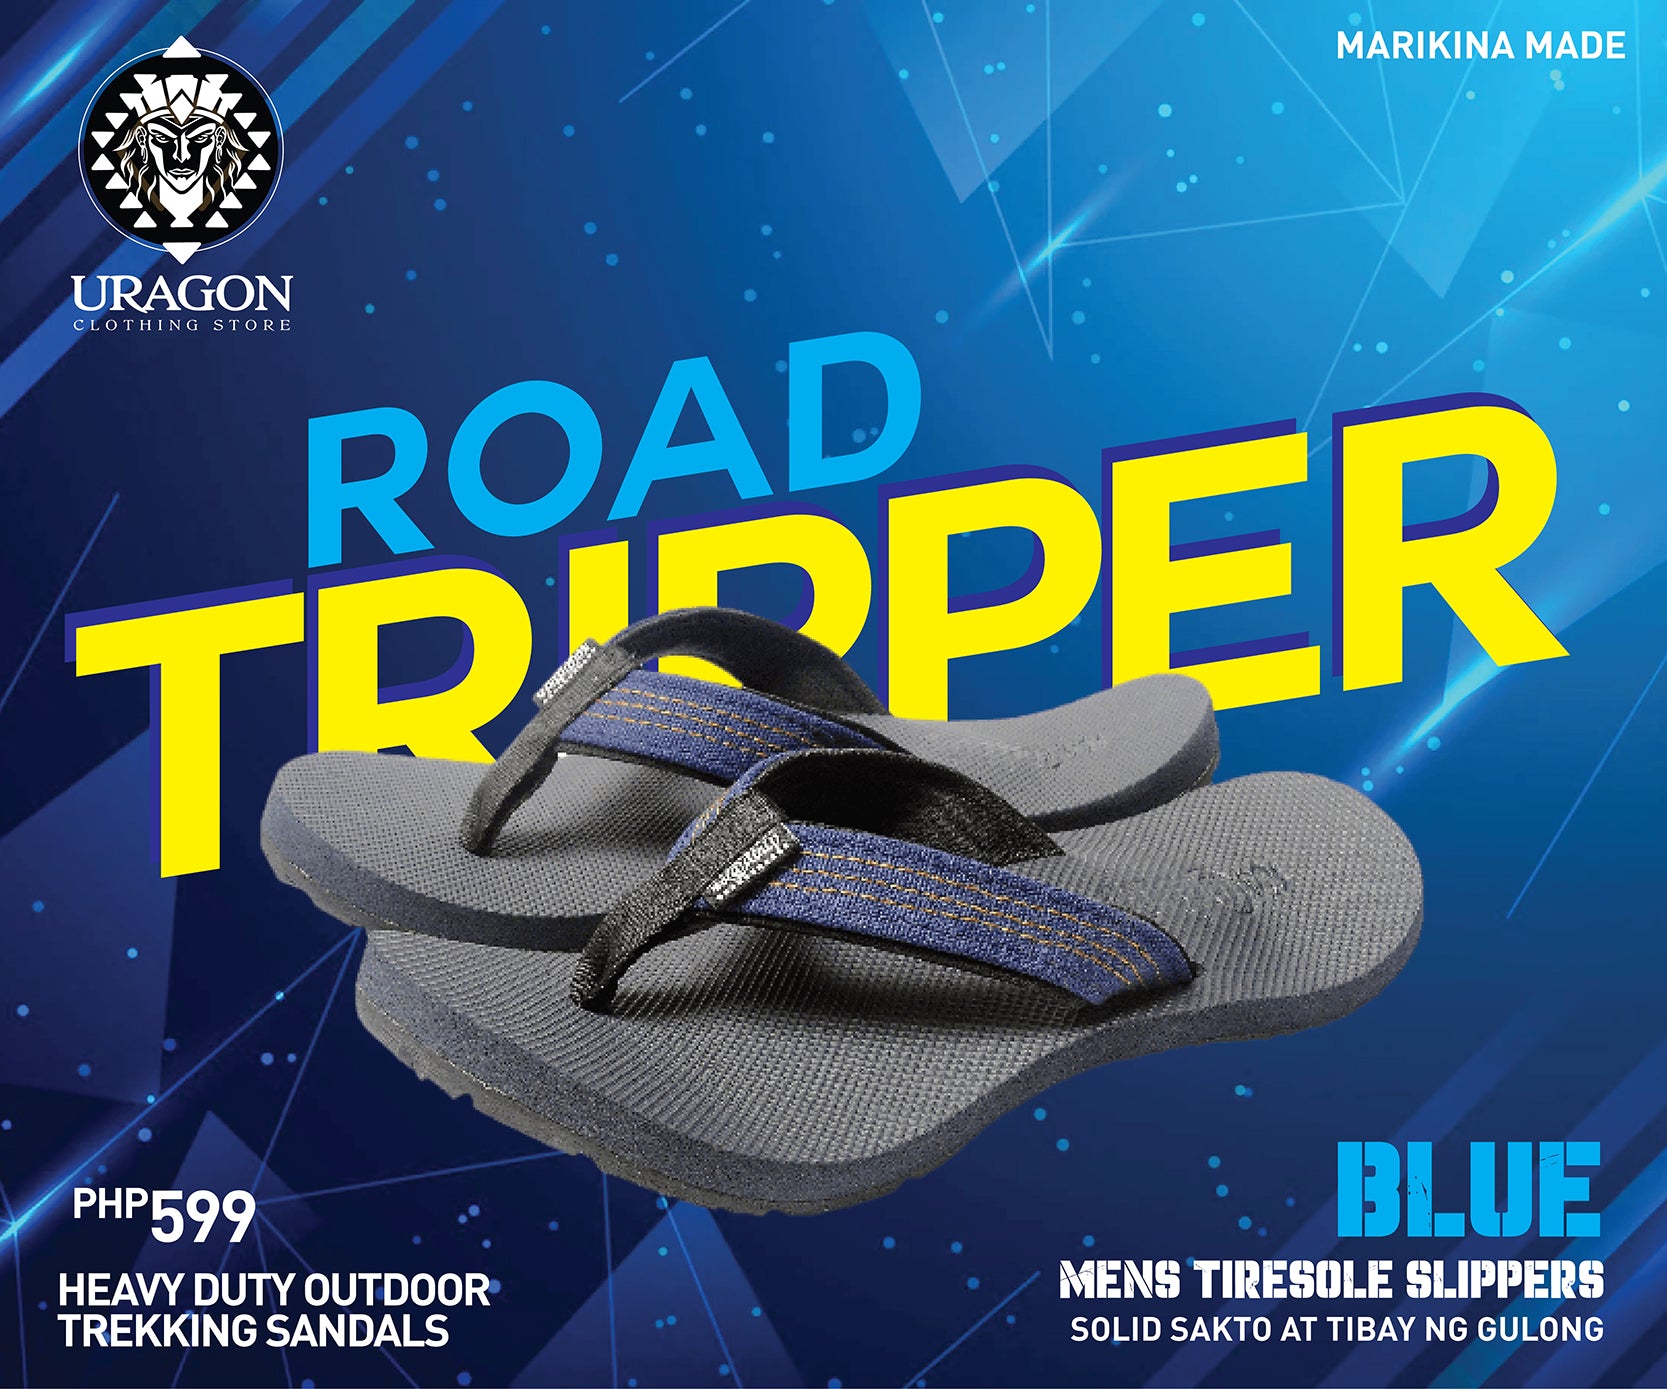 Uragon Road Tripper Tiresole Slipper Blue